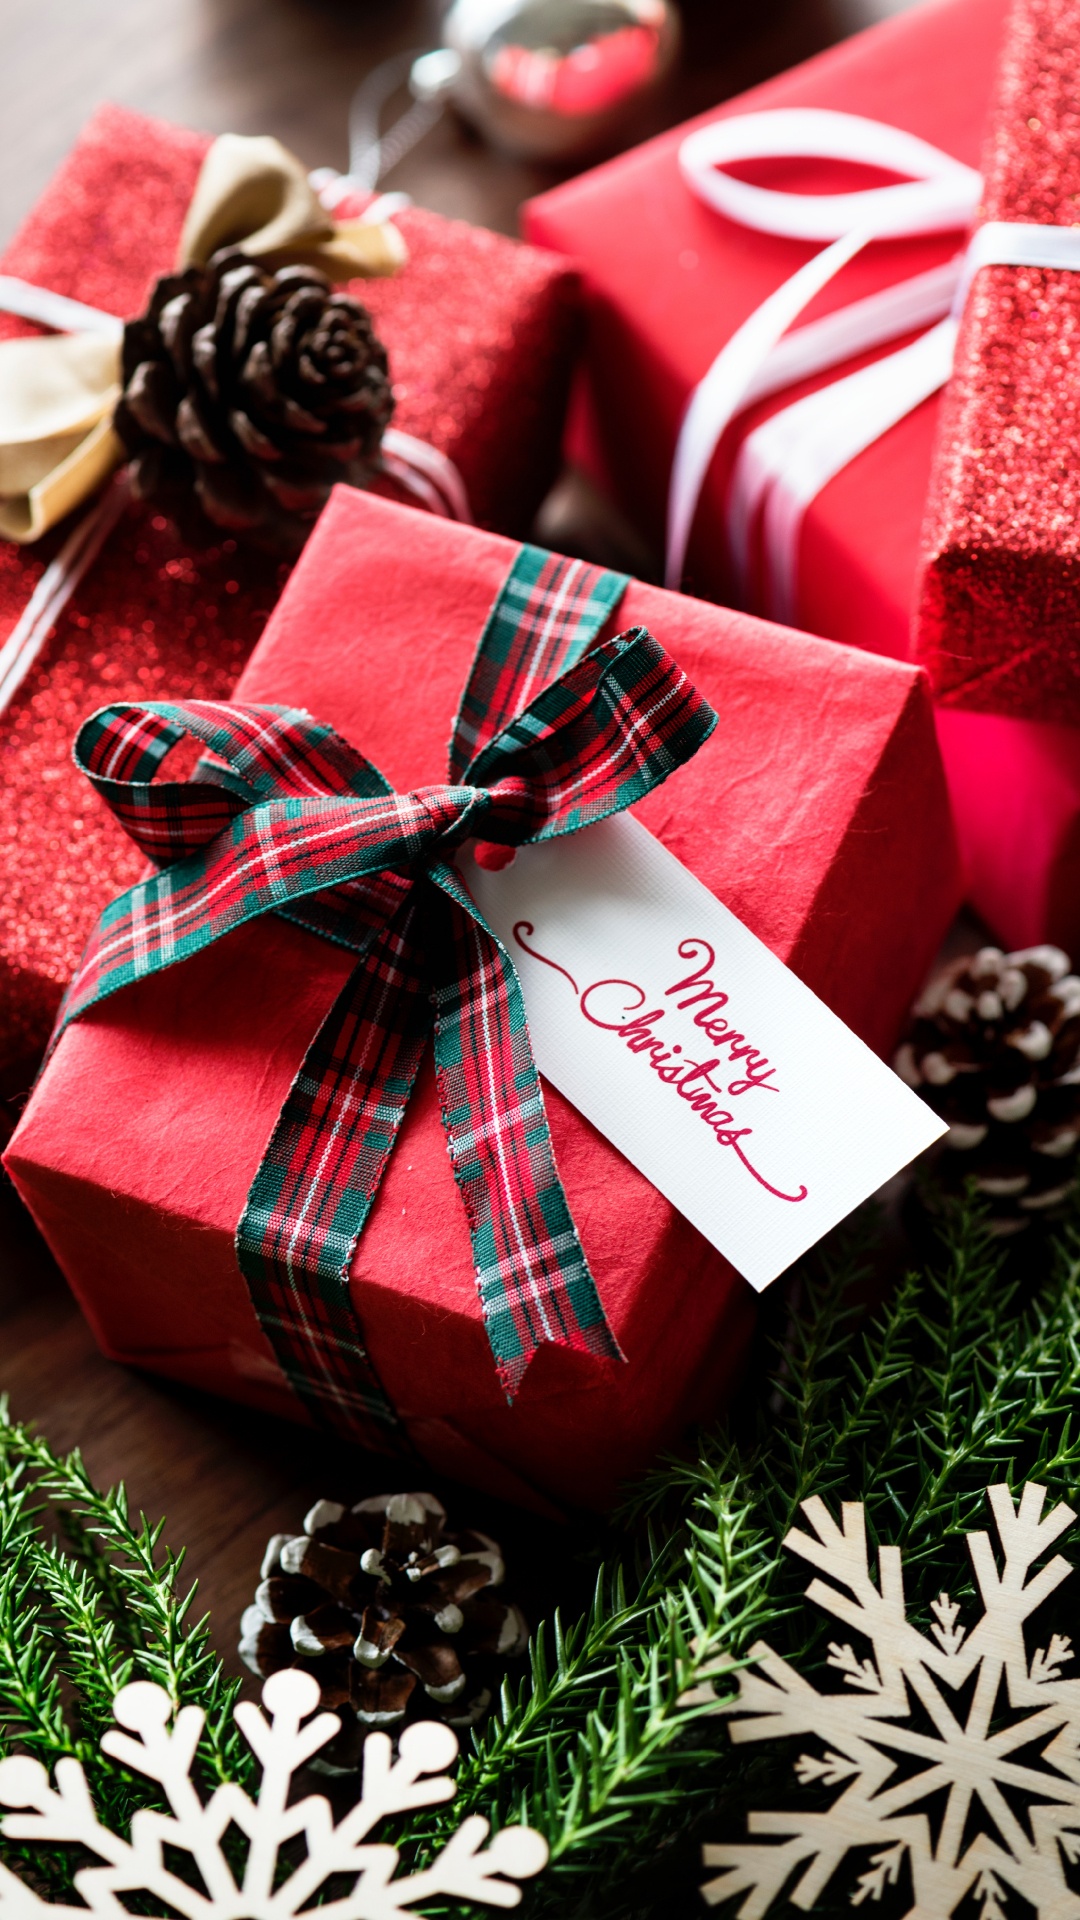 礼物, 圣诞节礼物, 礼品包装, 圣诞节那天, 丝带 壁纸 1080x1920 允许